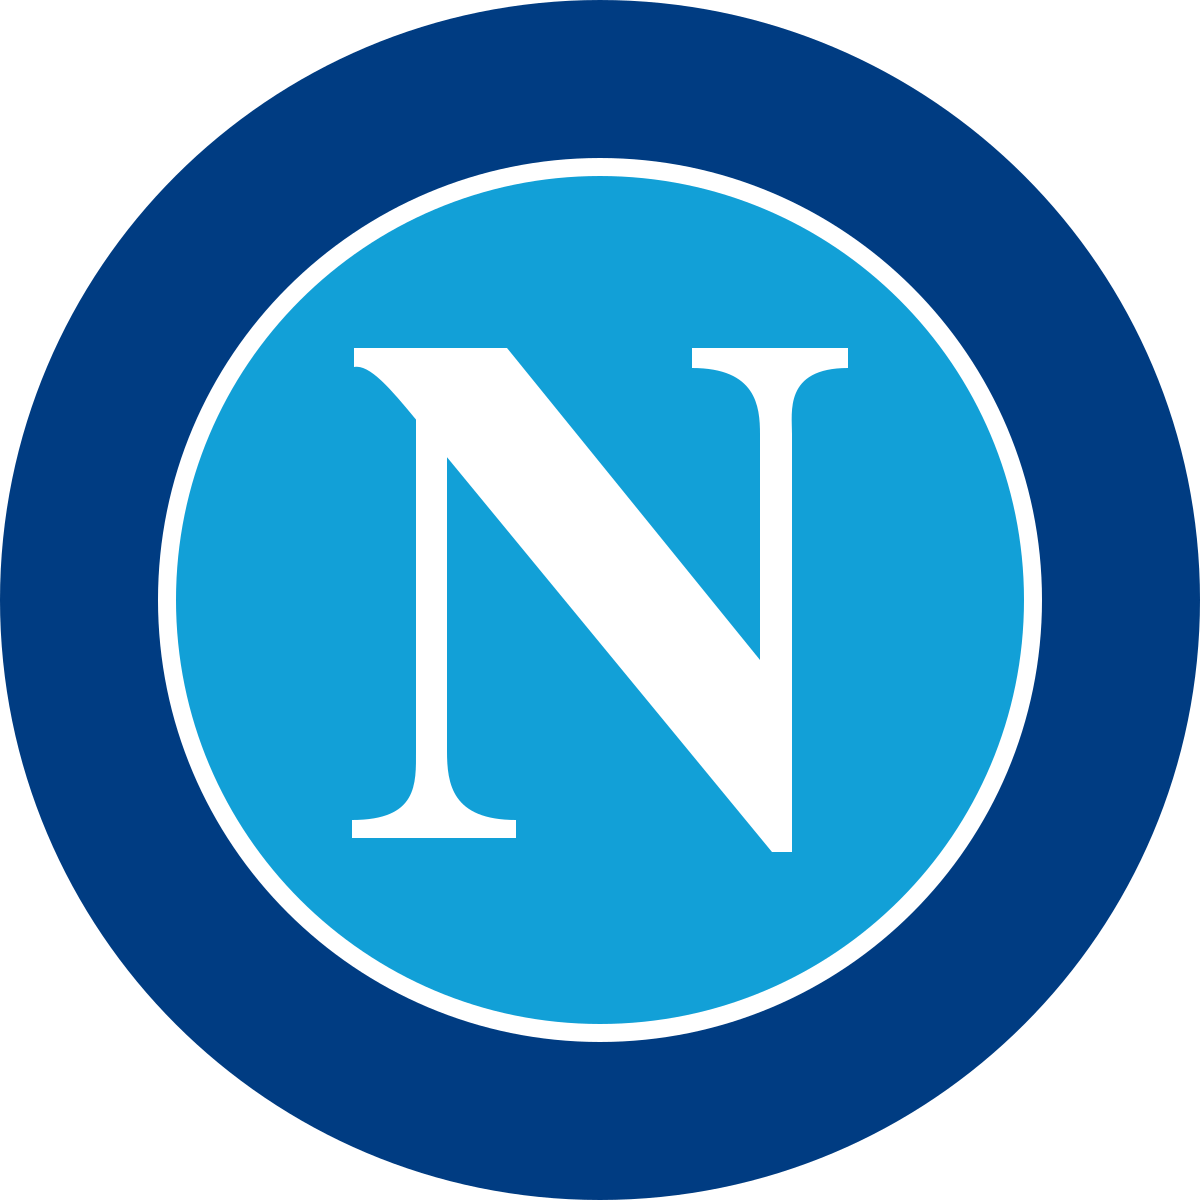 Napoli Logo - S.S.C. Napoli